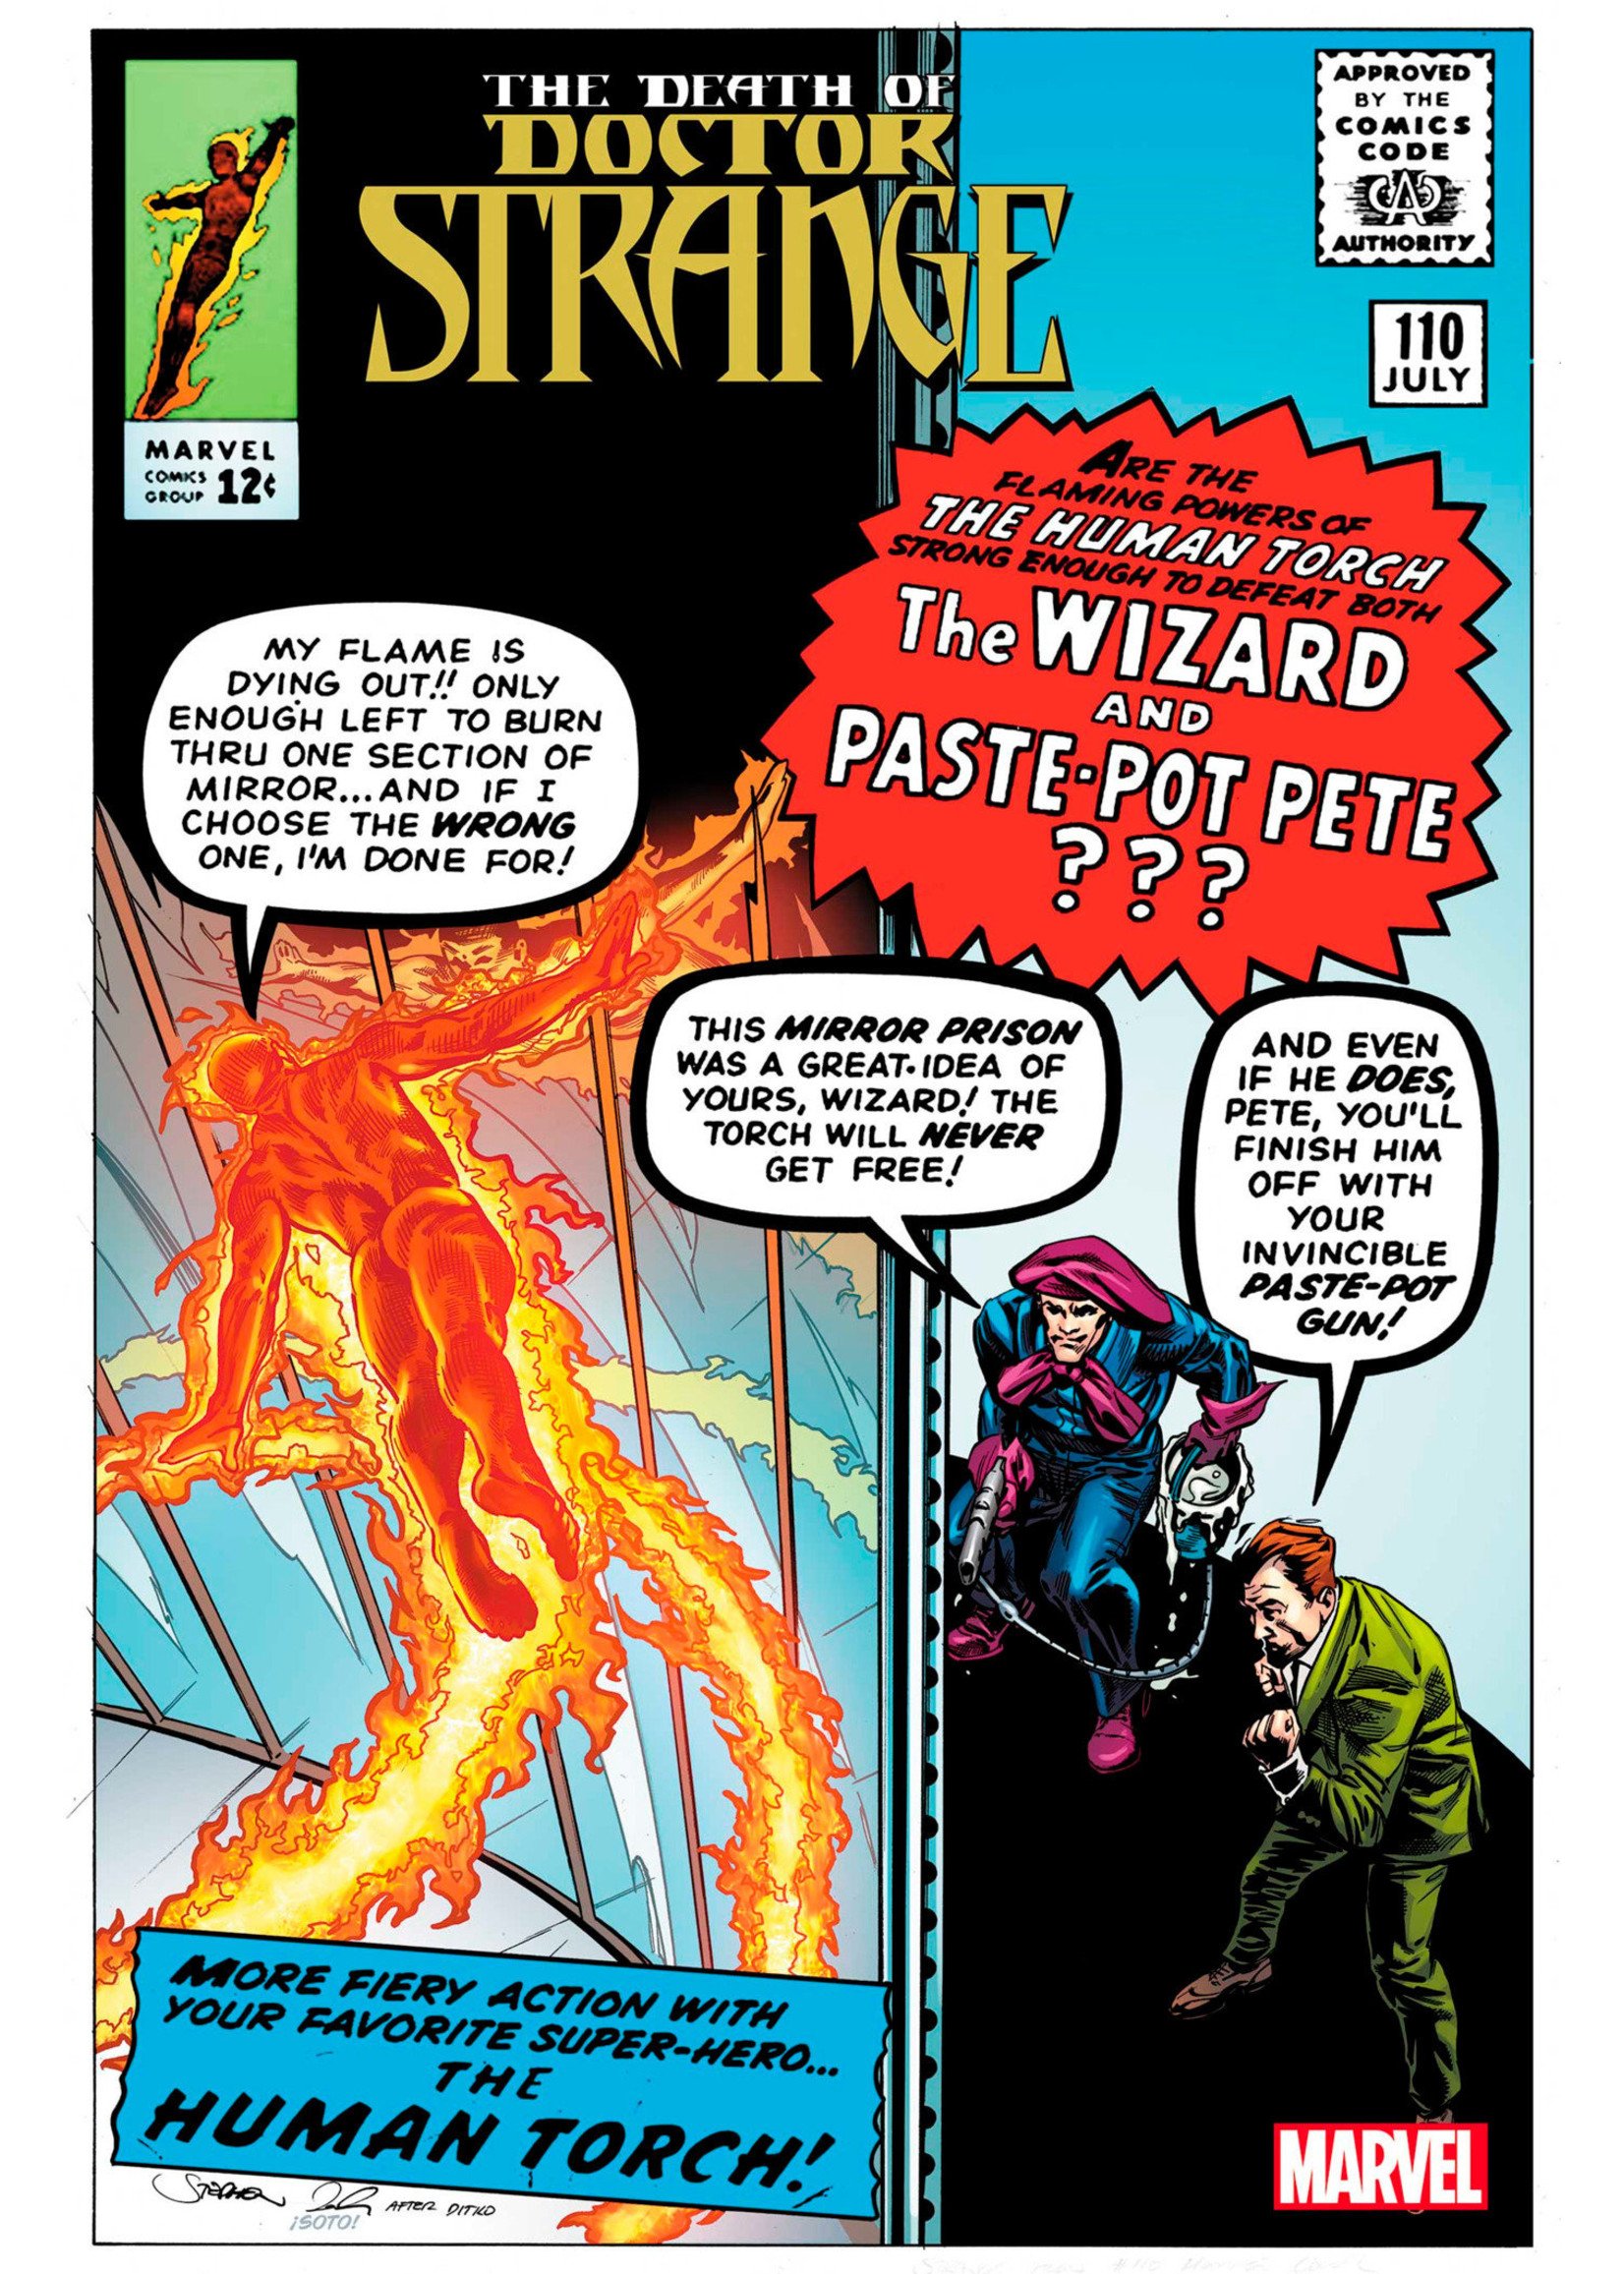 The Death of Doctor Strange #5